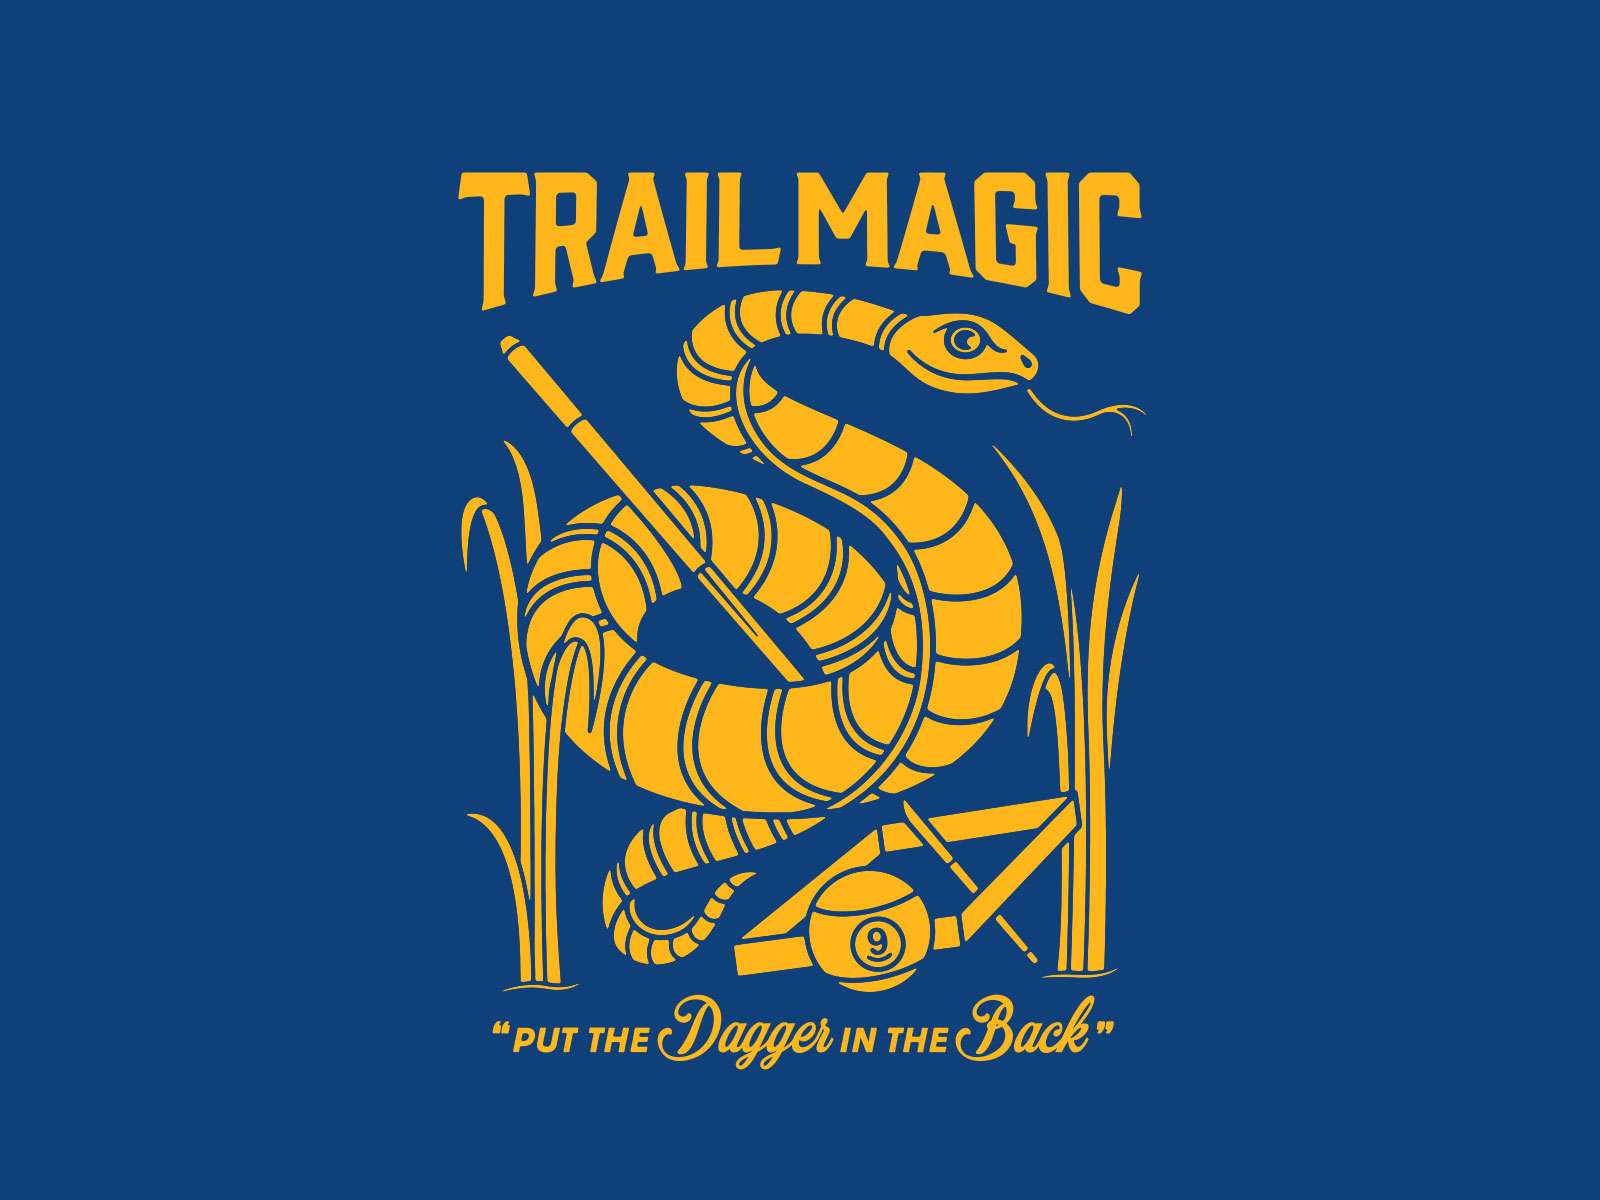 the magic trail